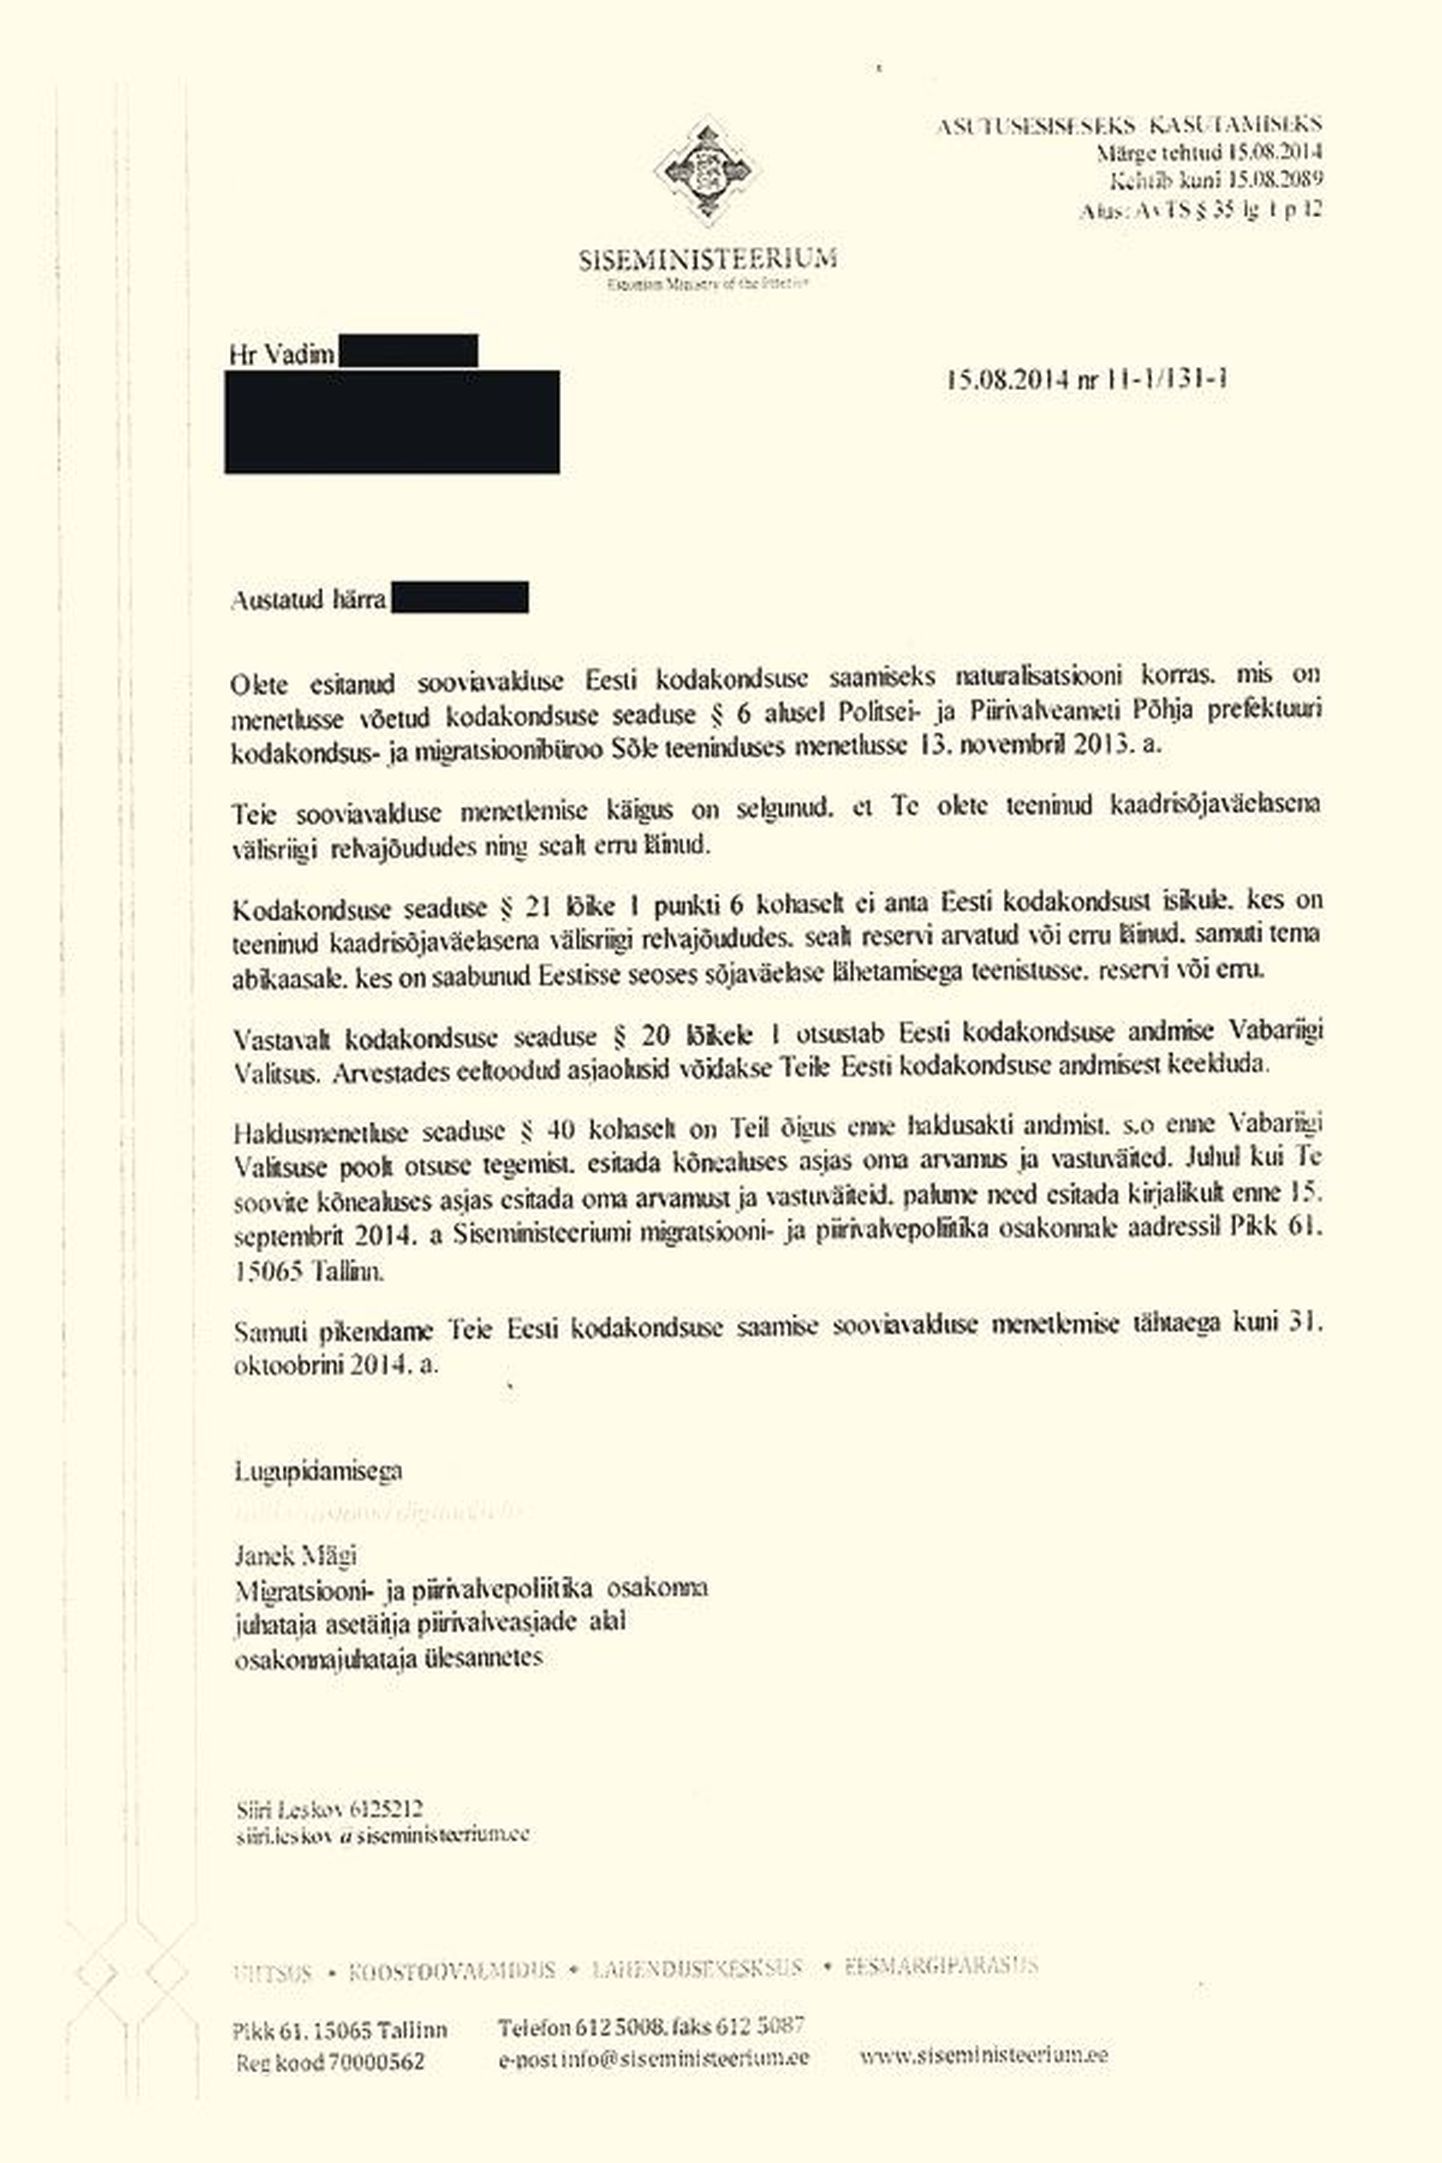 Представитель Департамента гражданства и миграции ставит в письме Вадима в известность, что не обнаружено обстоятельств, на основе которых ему могут отказать в предоставлении эстонского гражданства.